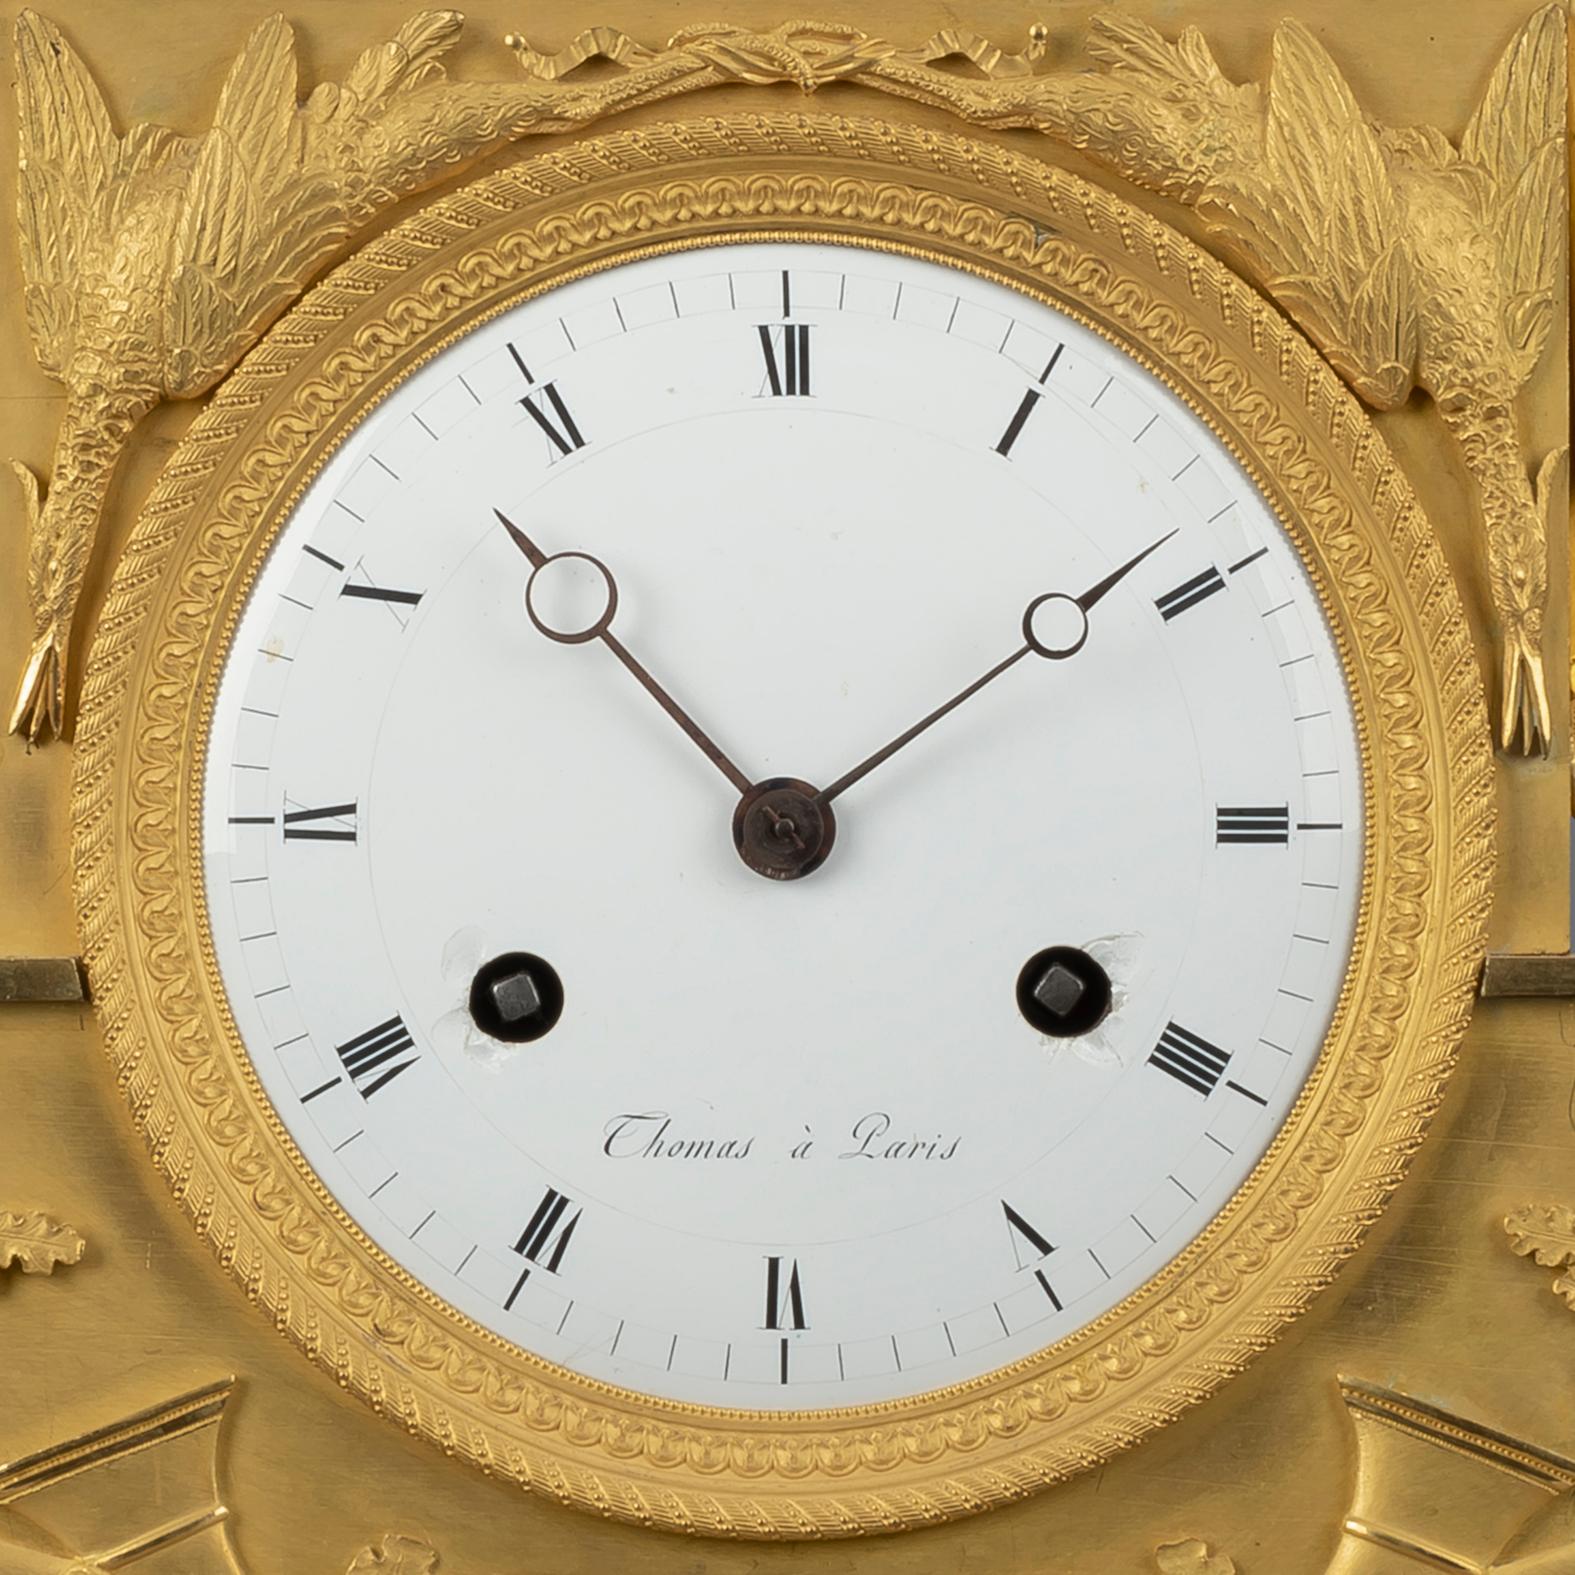 Une belle horloge en bronze doré de la période Empire représentant Diane la chasseresse.

Le cadran est signé 